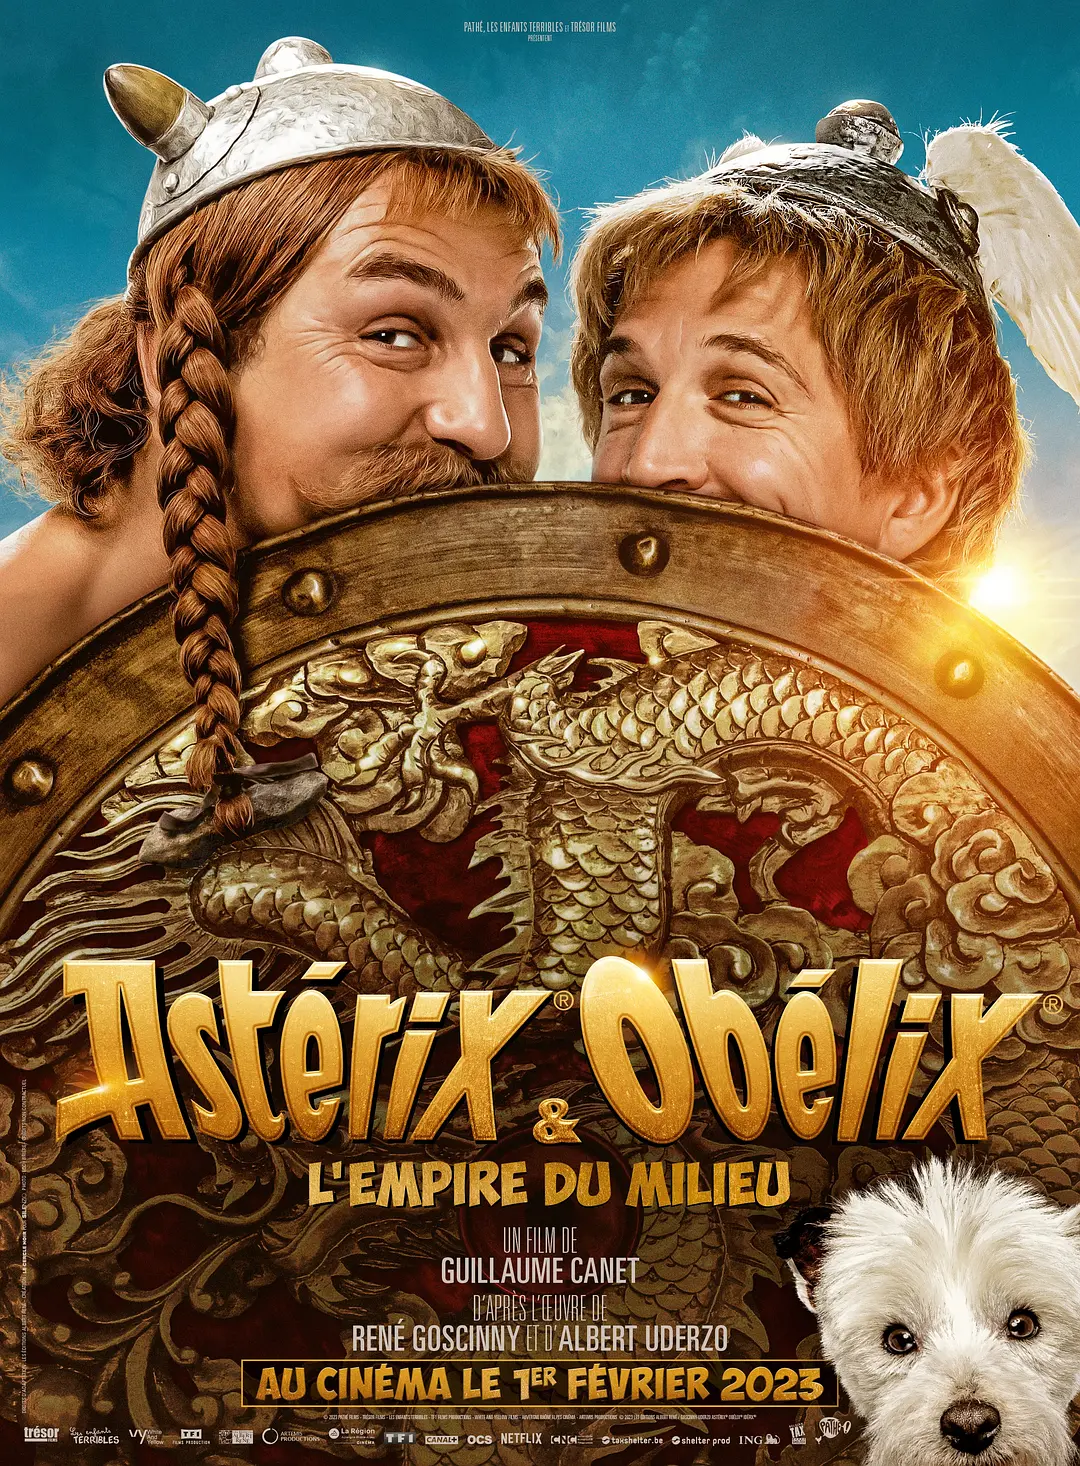 Poster of the movie Asterix & Obelix, l'empire du mileu